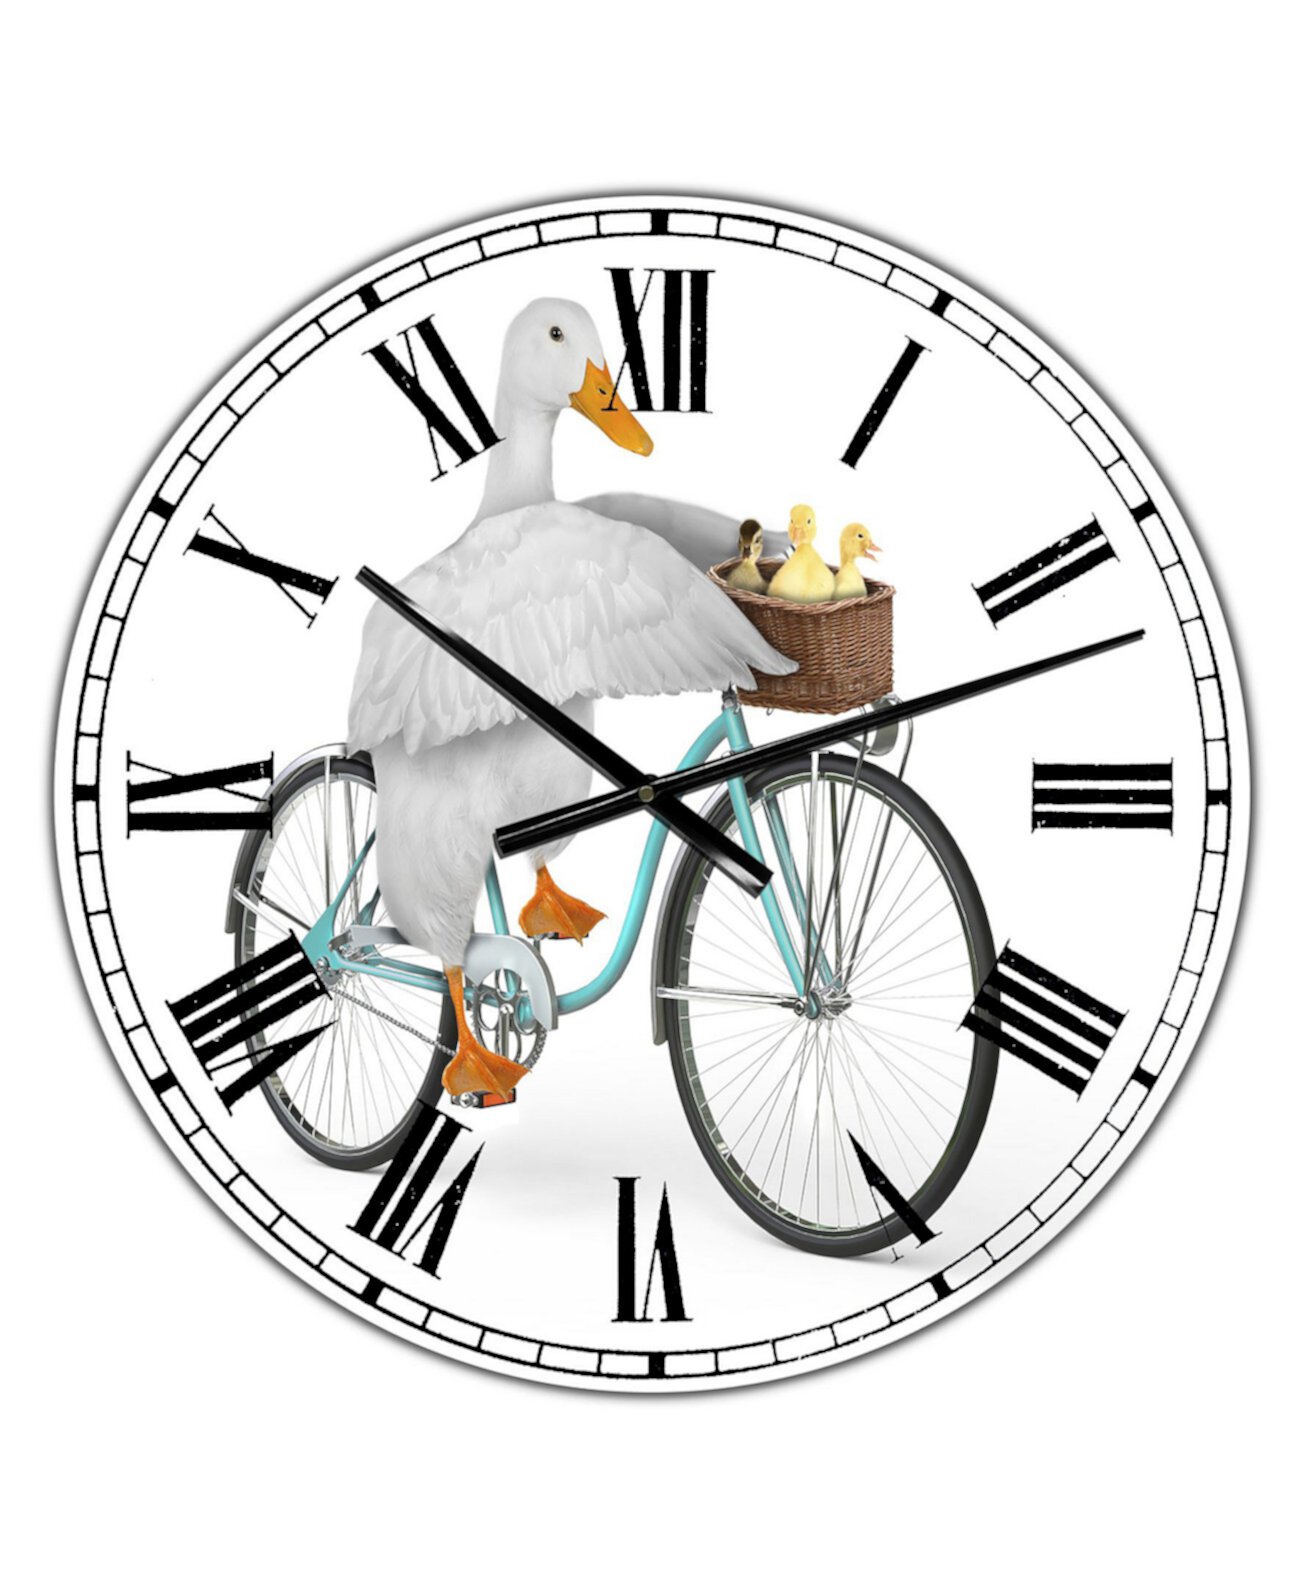 Часы настольные велосипед. Велосипед с часами рисунок на стене. 8 часов на велосипеде